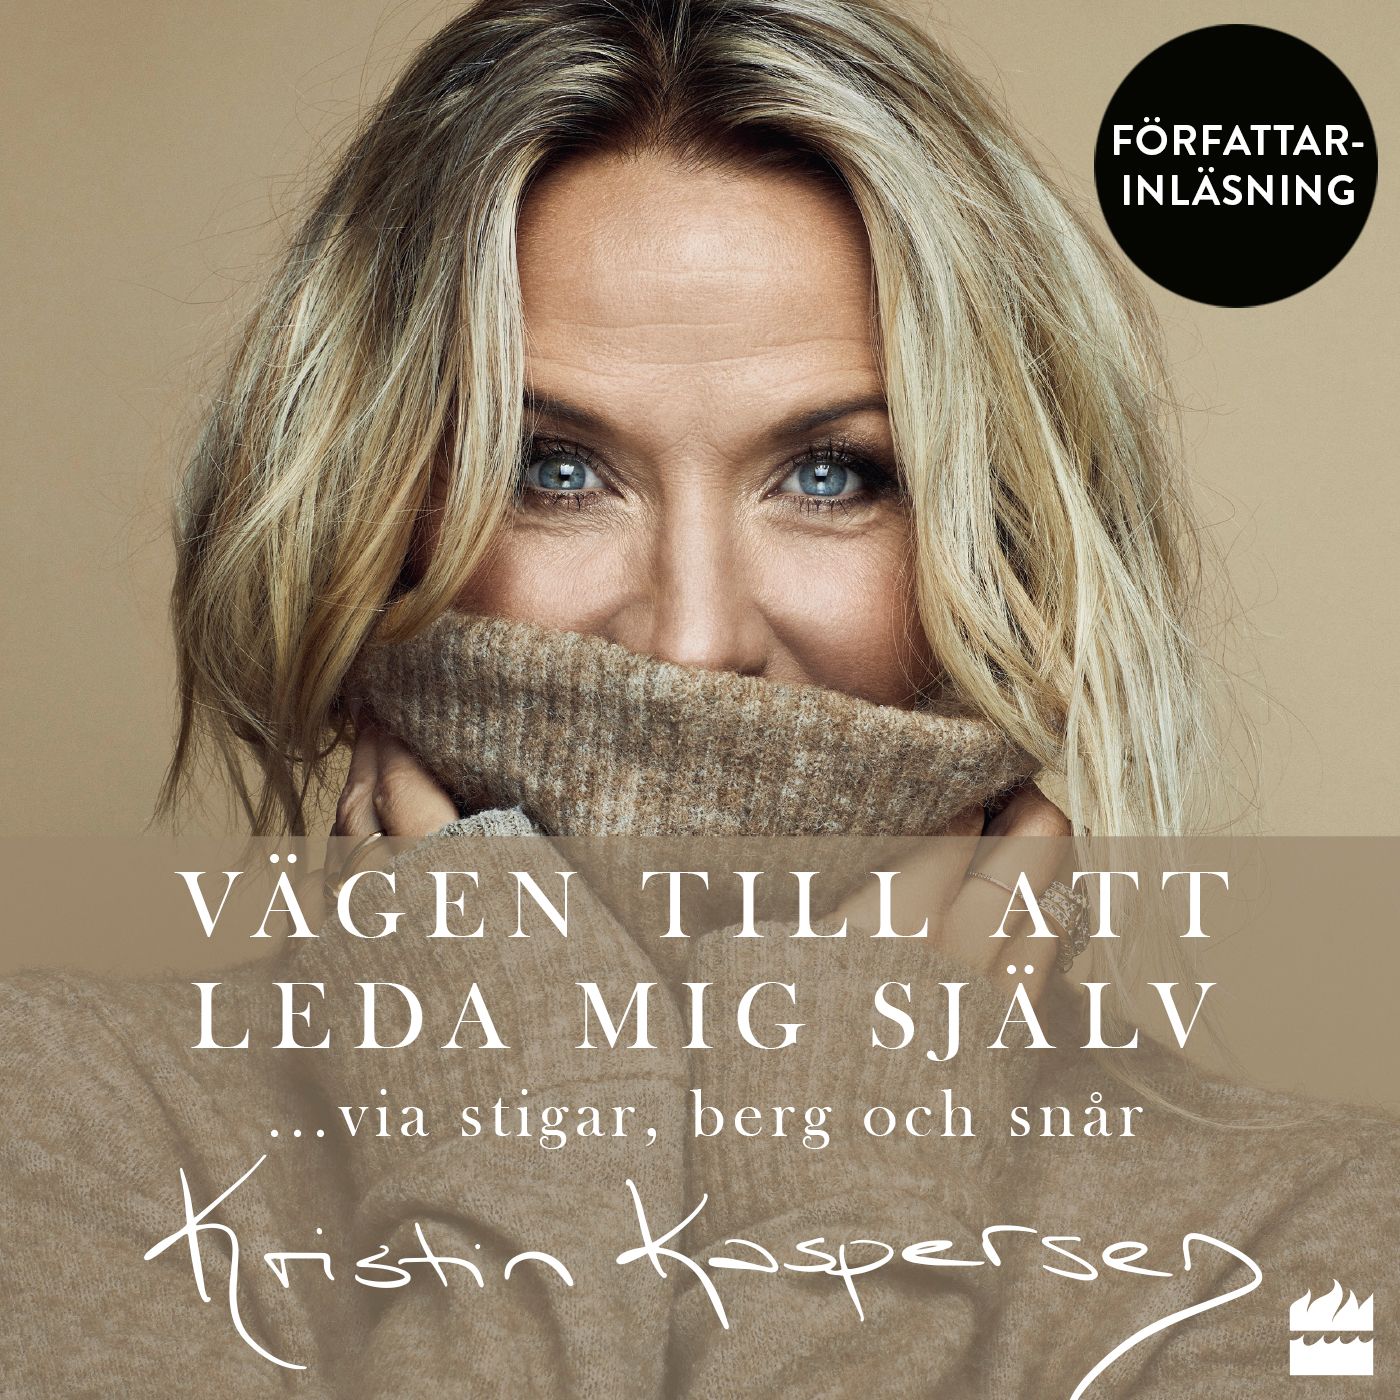 Vägen till att leda mig själv, ljudbok av Kristin Kaspersen